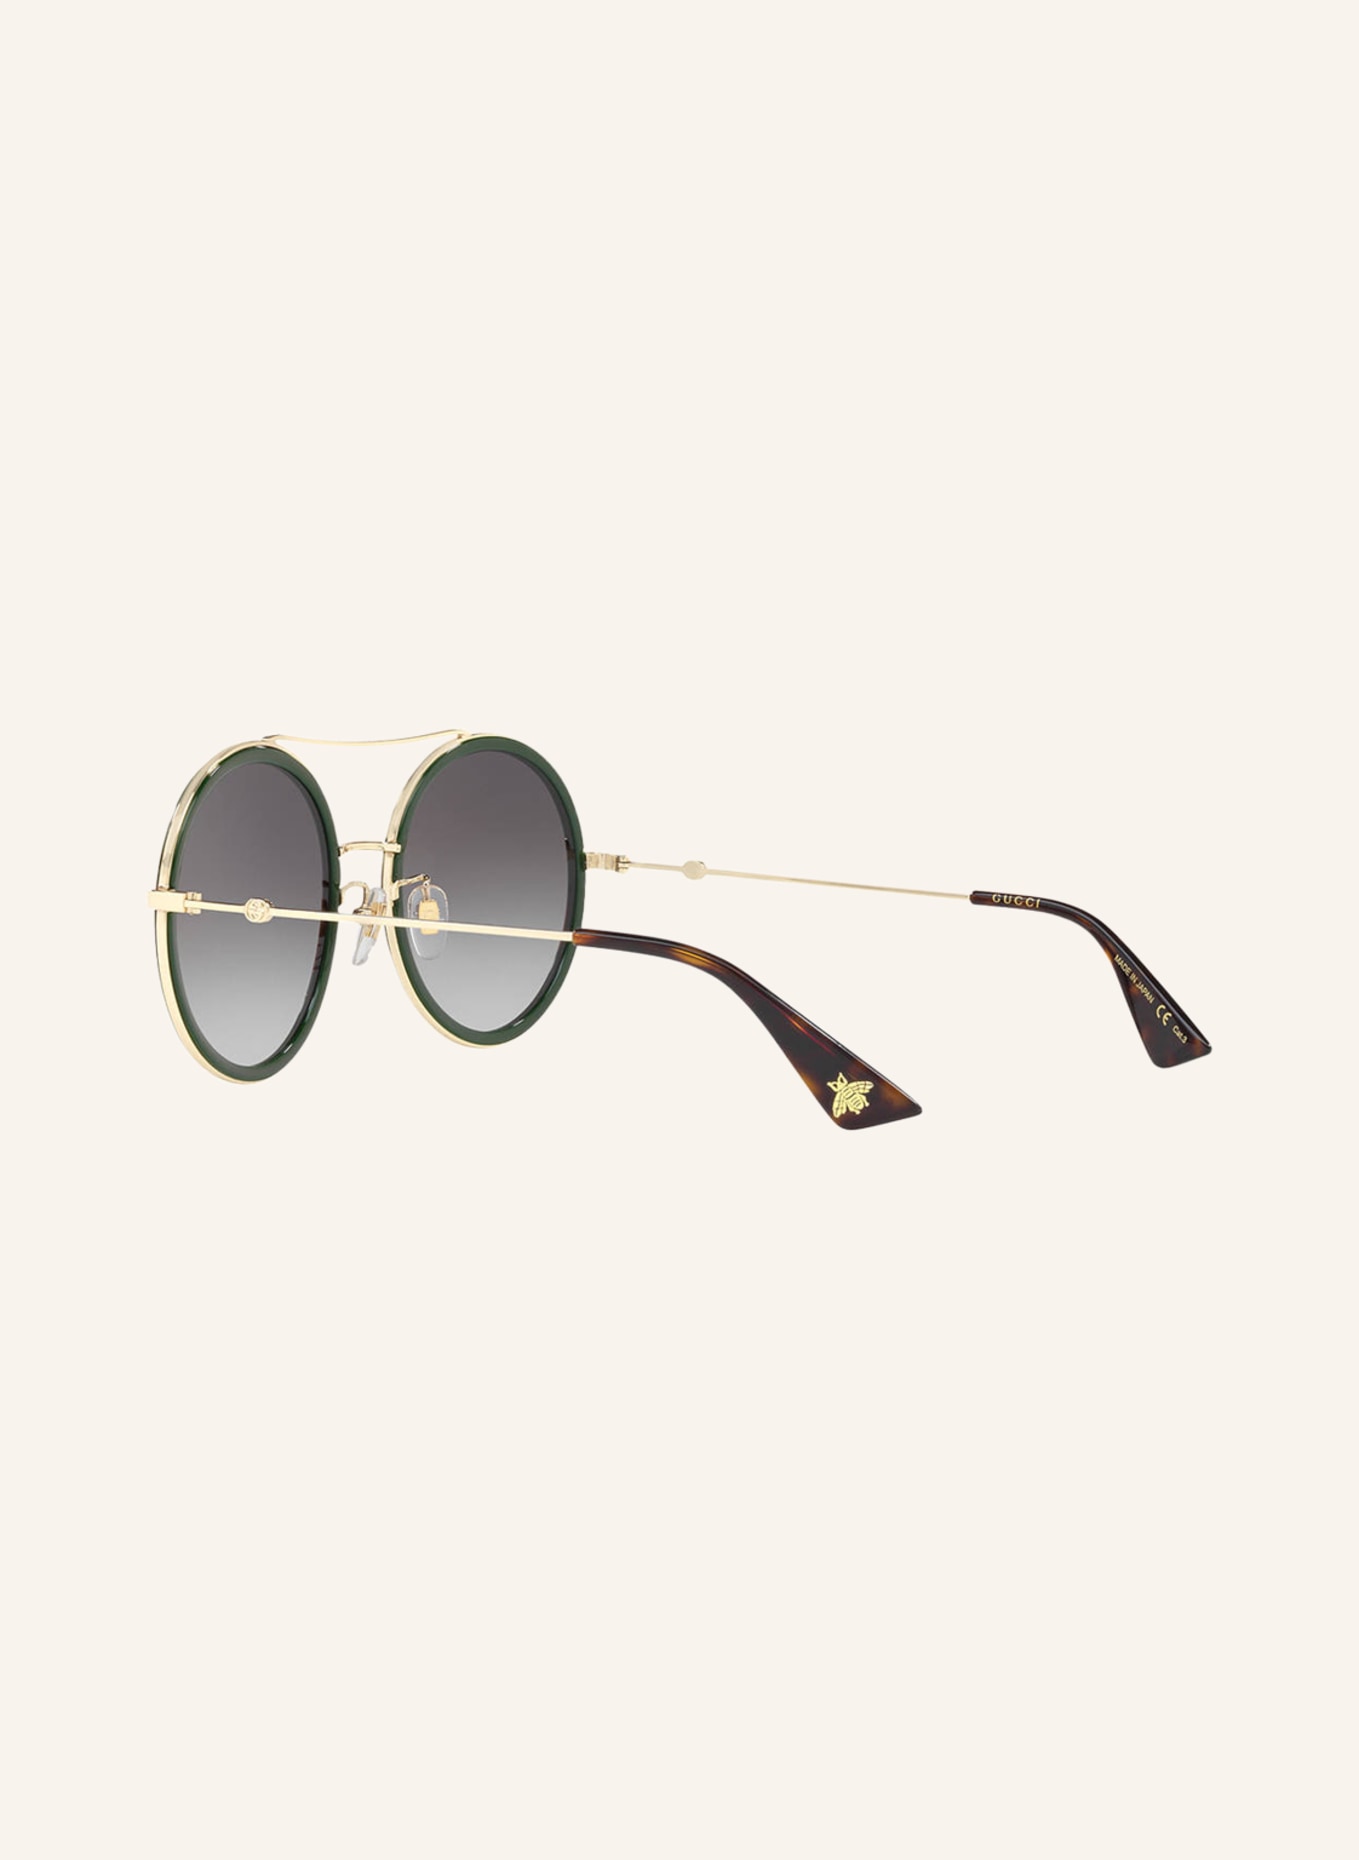 GUCCI Sunglasses GG0061S, Color: 4470J1 - GOLD/ GRAY GRADIENT (Image 4)